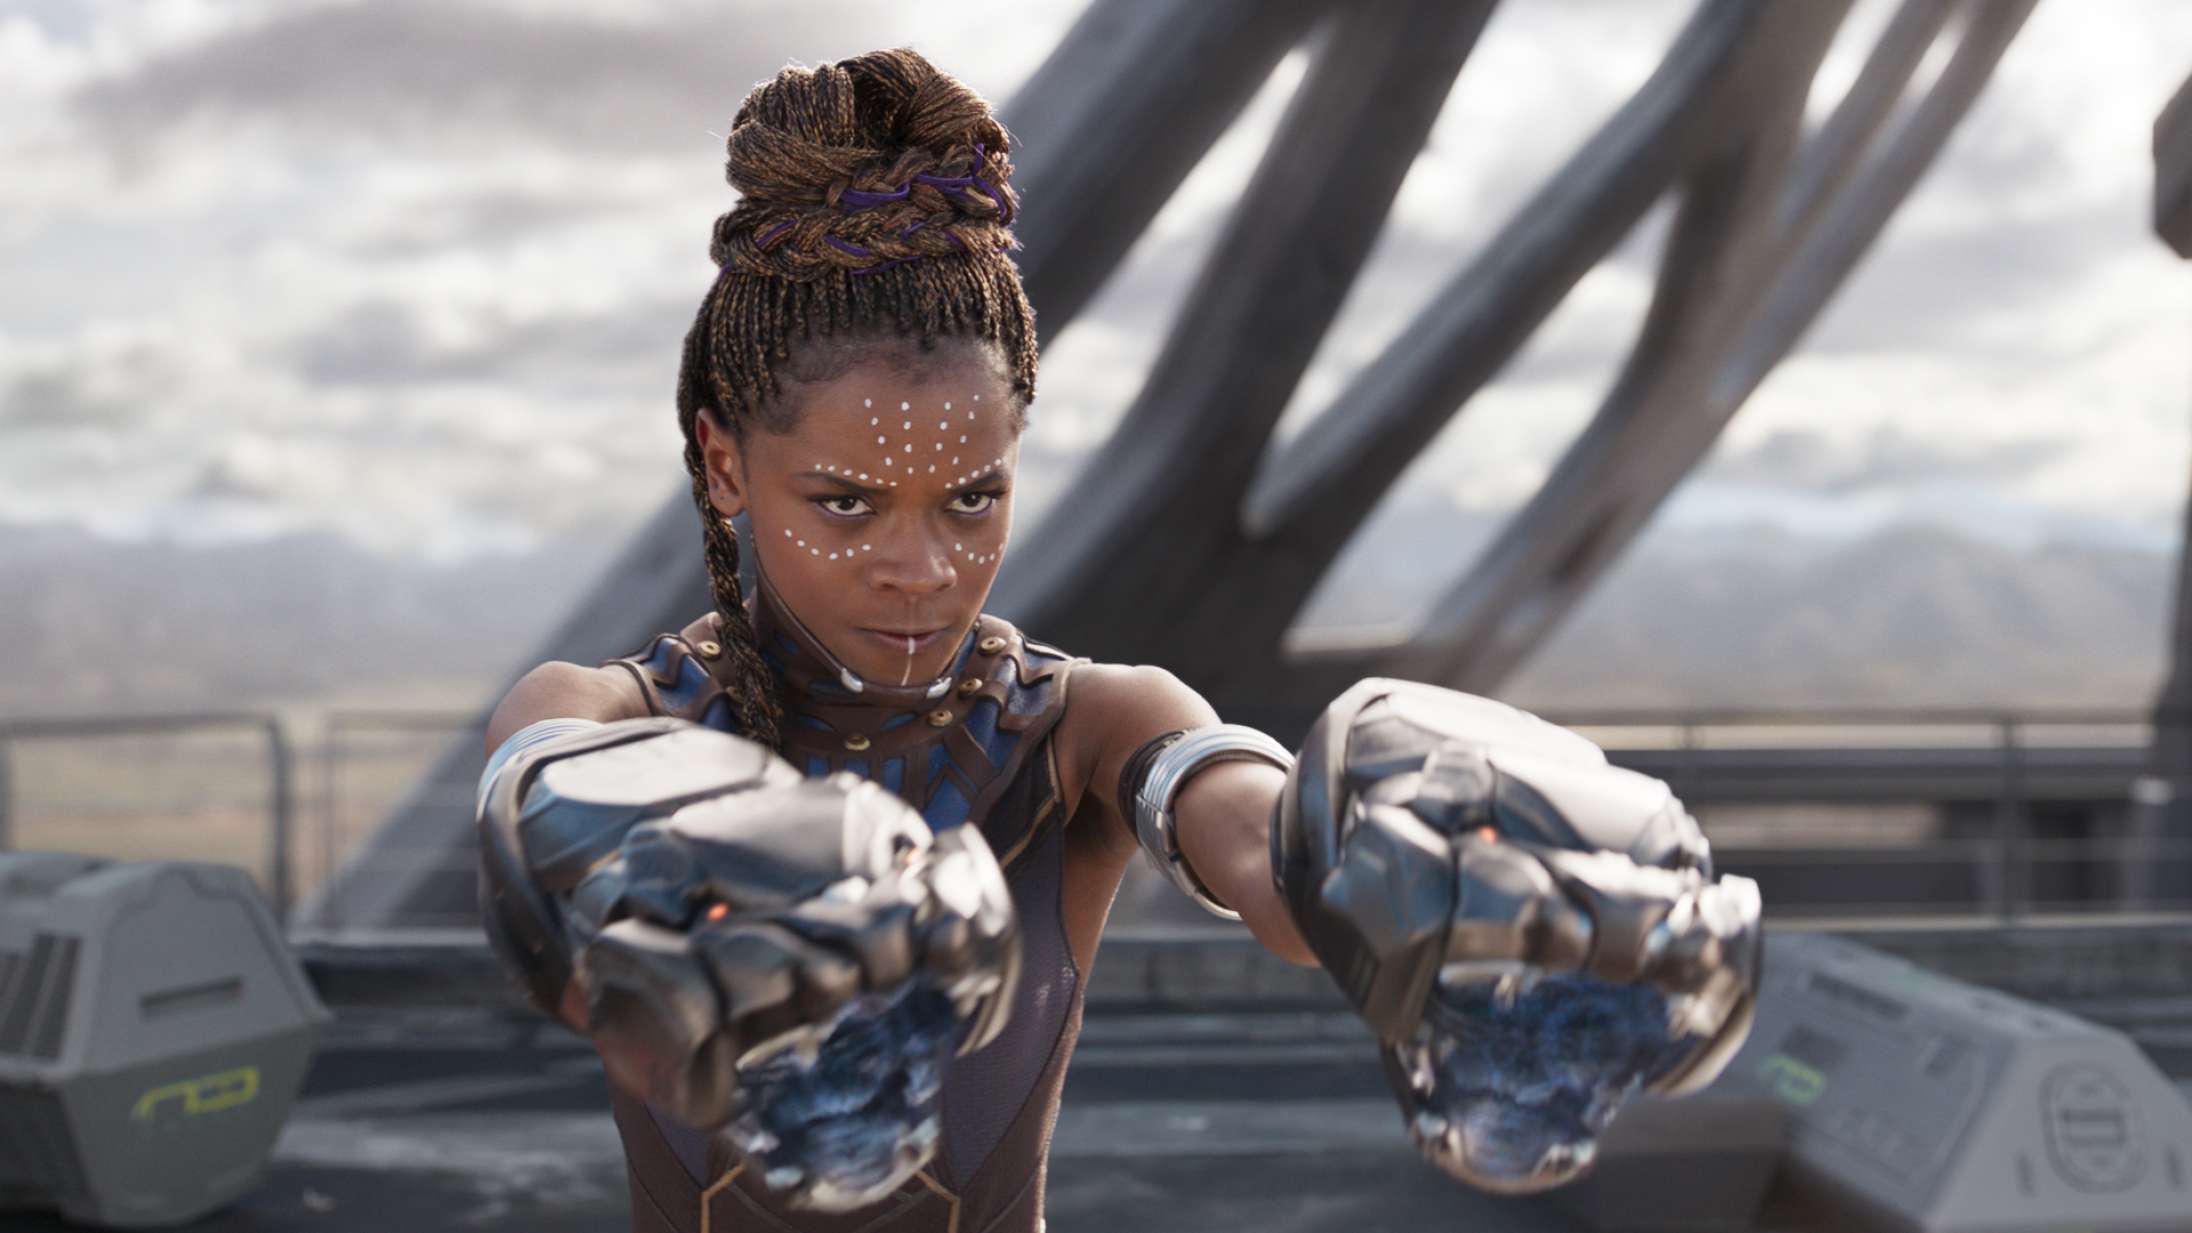 Hollywoods vaccinedilemma vokser: Kan ‘Black Panther’-stjerne lukke Marvel-produktion?